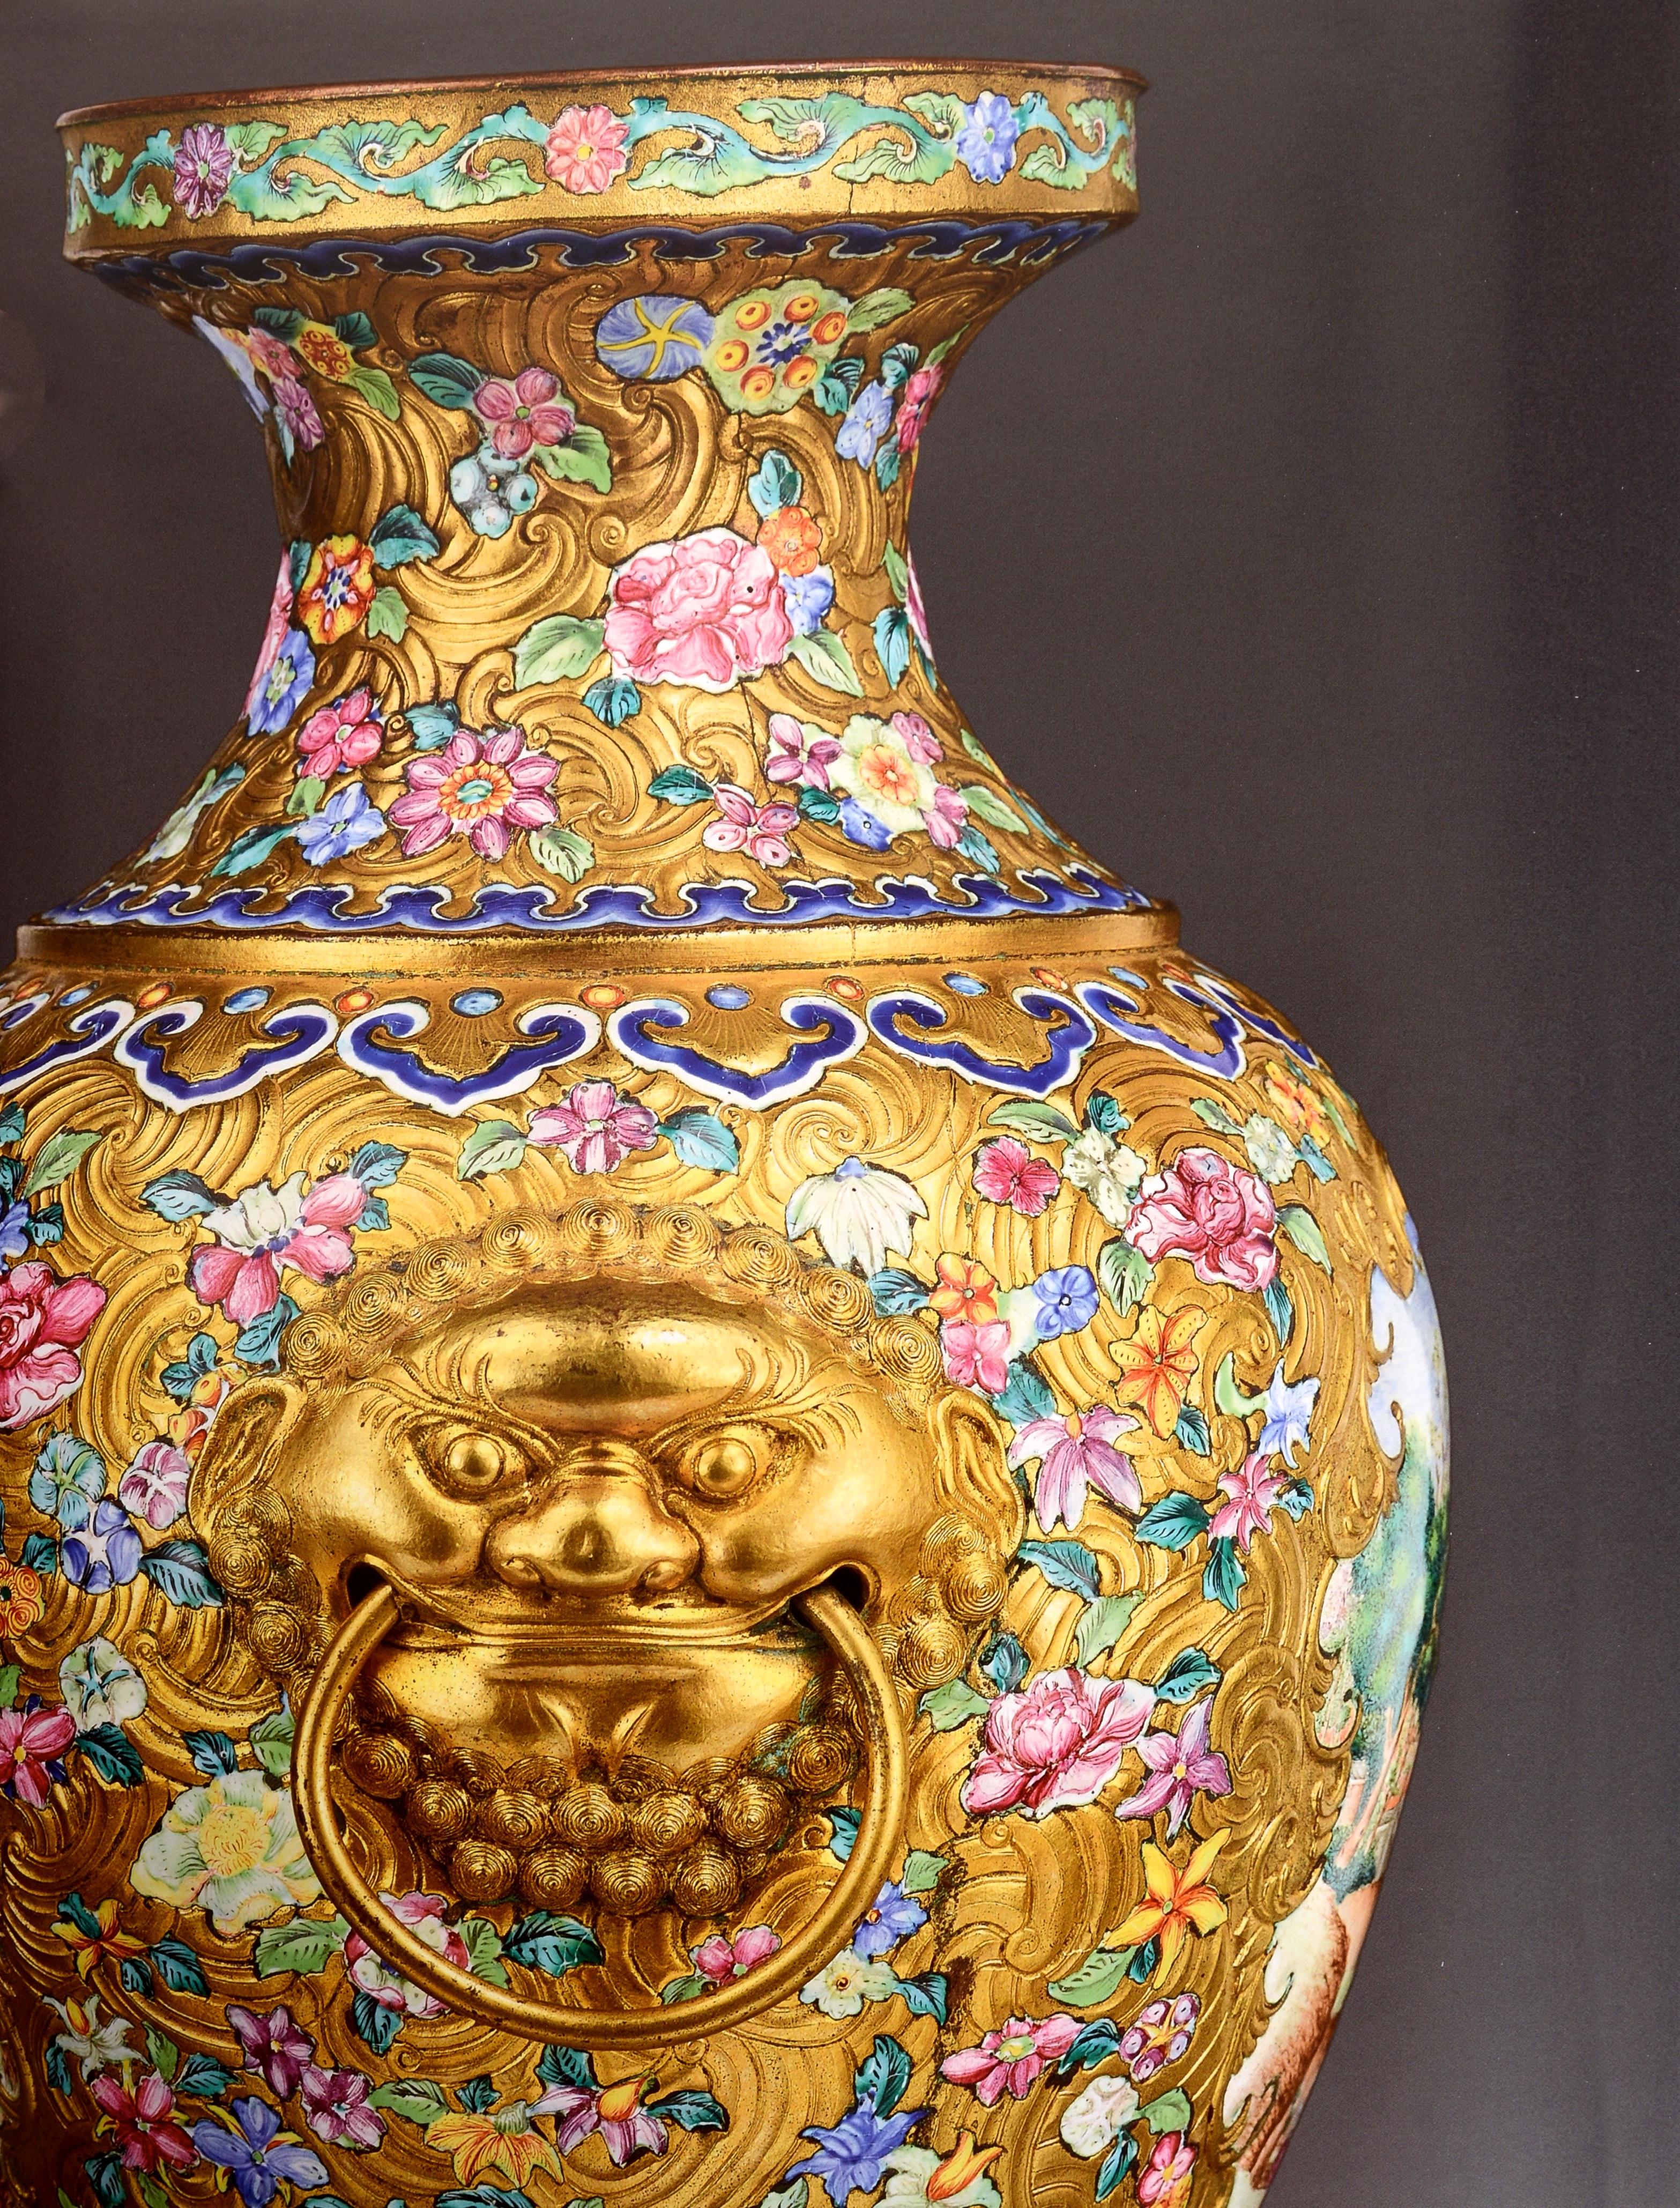 Sotheby's Hongkong Wichtige Privatsammlung Chinesische Keramik 8. Oktober 2019. 1st Ed Hardcover. Dazu gehören seltene Beispiele von Ming- und Qing-Porzellan und mehrere außergewöhnliche Jadesorten. Herr Q.W. Lee war ein Bankier und Philanthrop, der